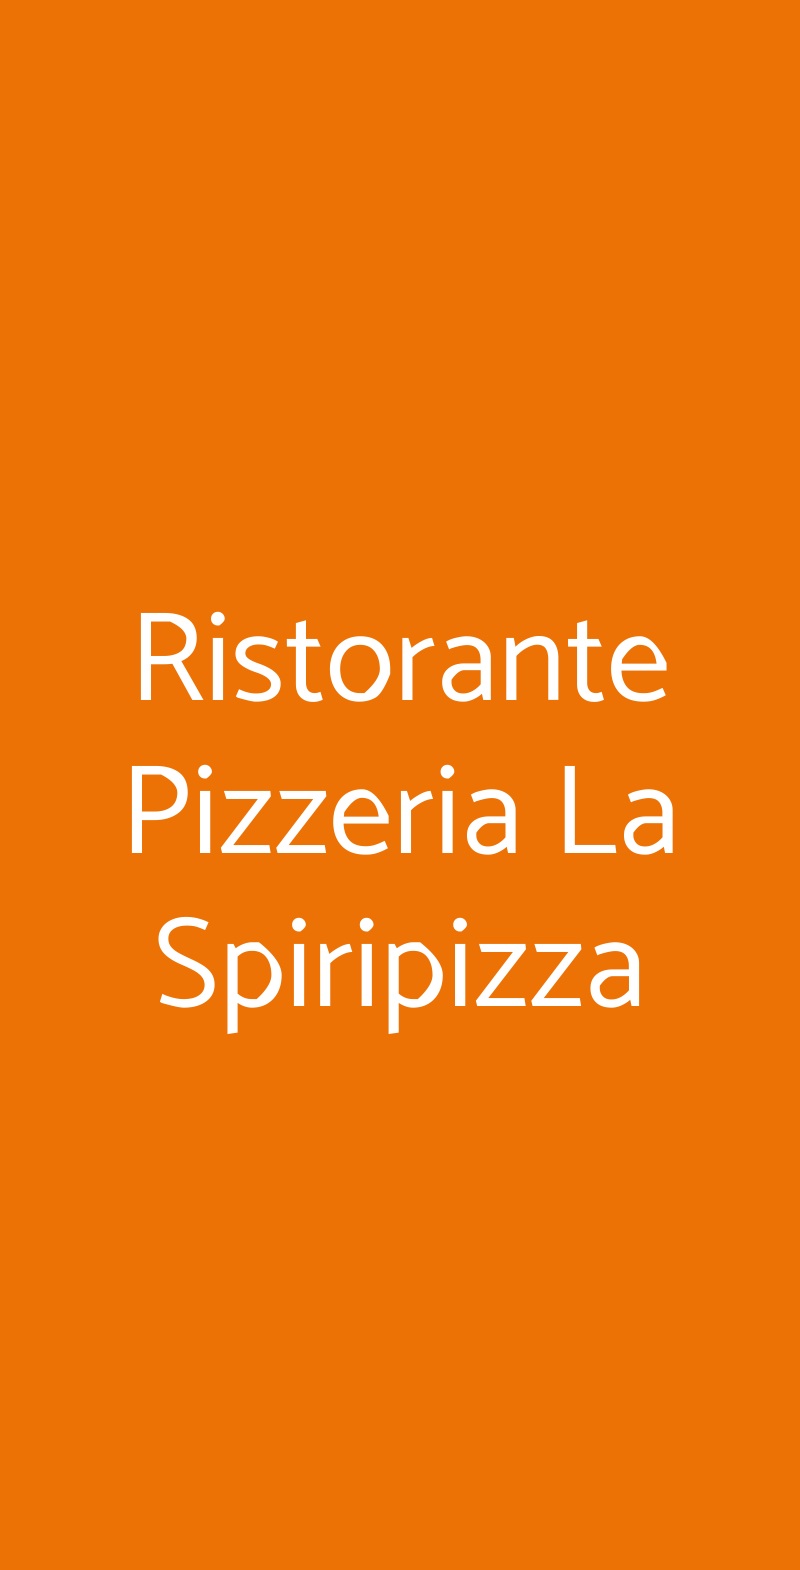 Ristorante Pizzeria La Spiripizza San Giorgio a Cremano menù 1 pagina